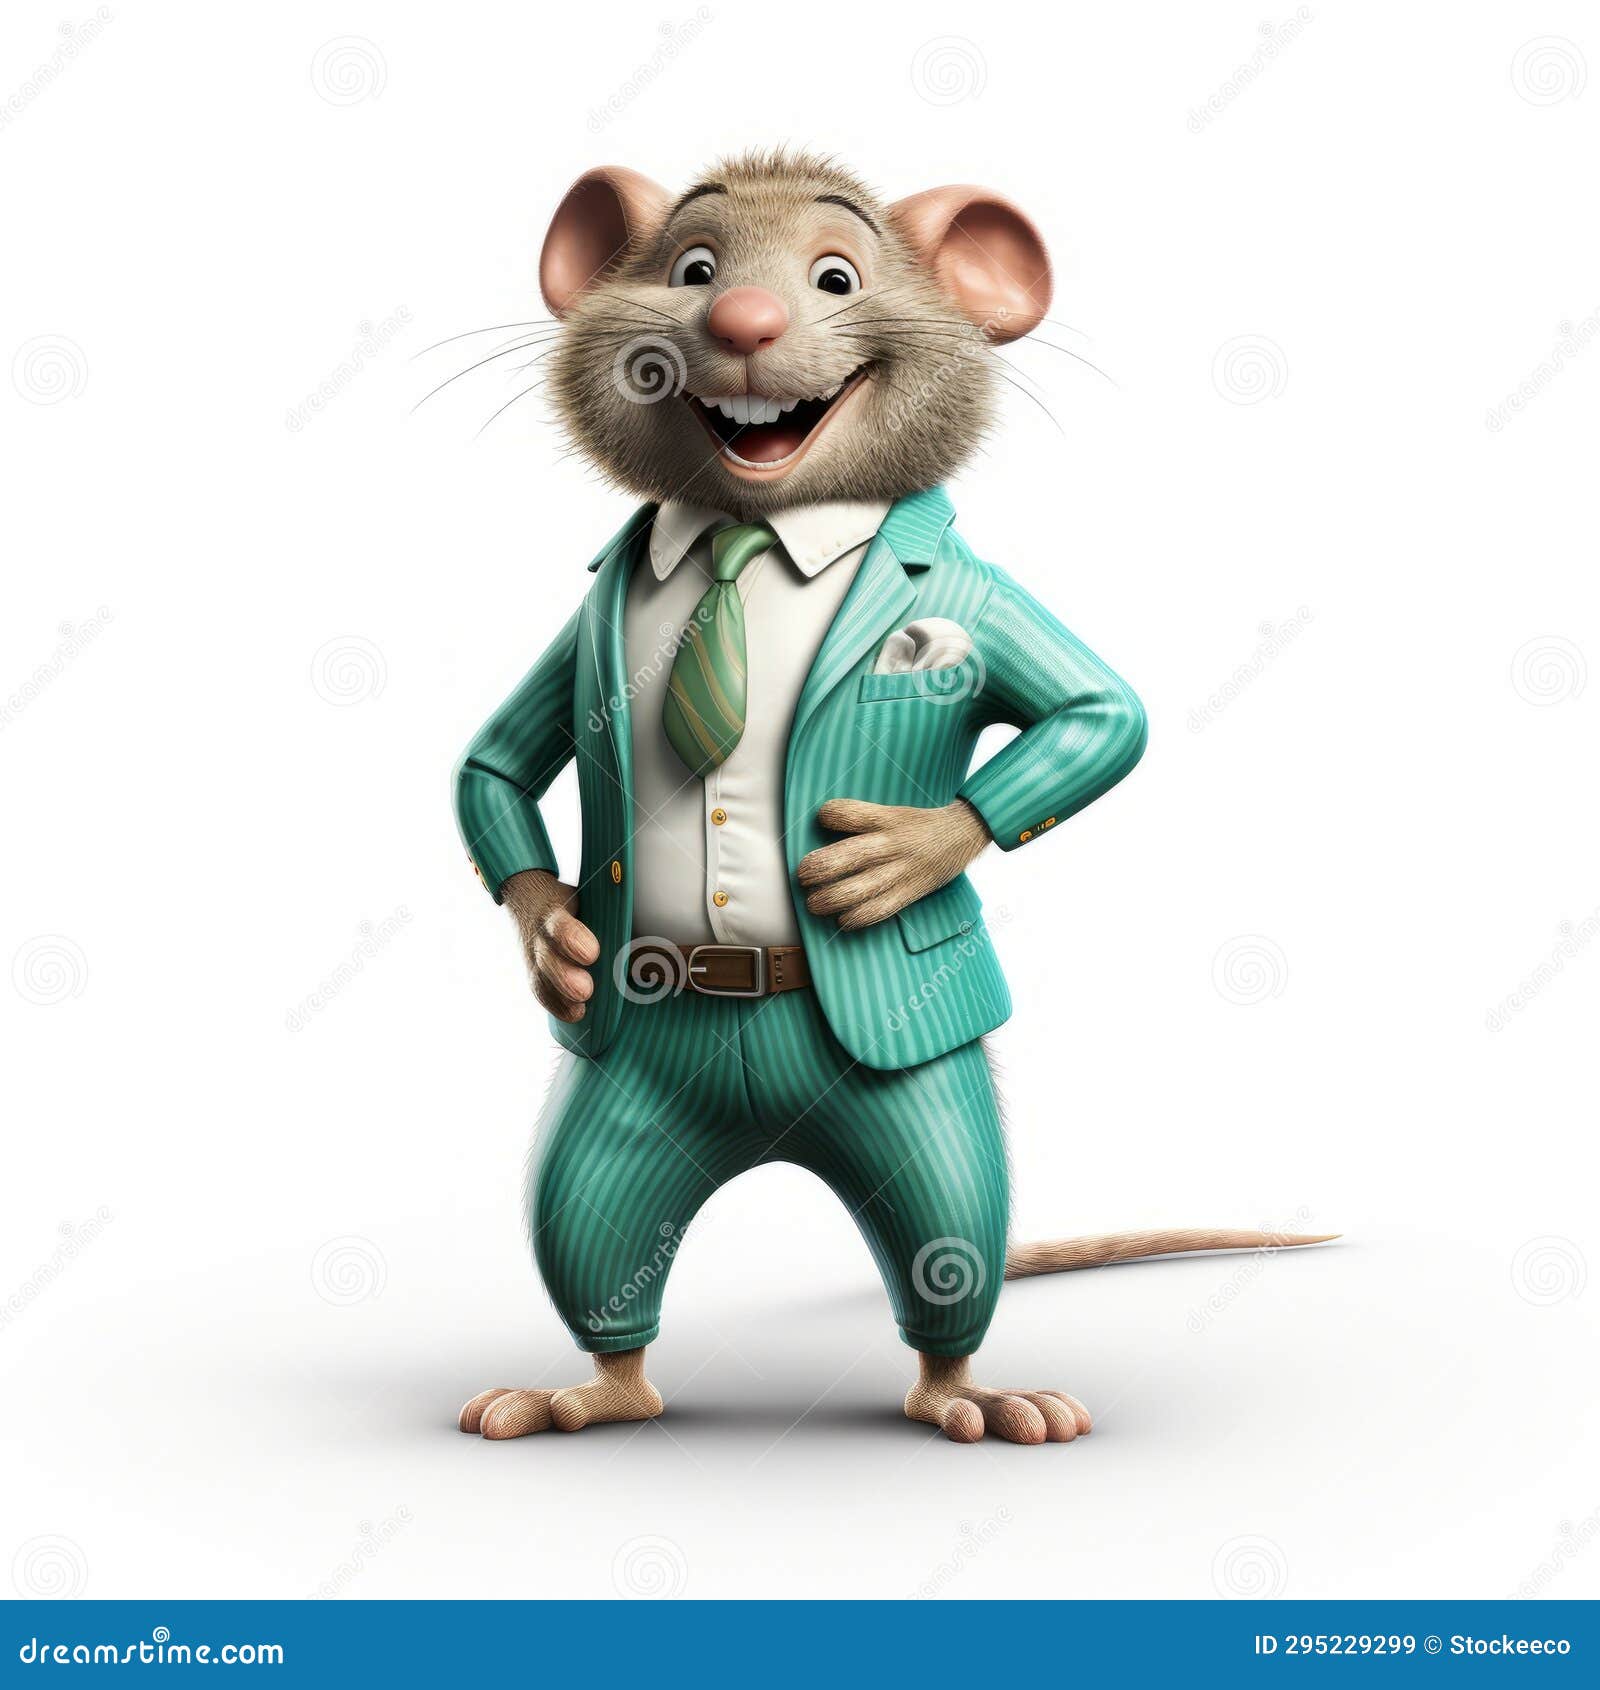 anthropomorphic rat in blue suit: photorealistic cartoonish caricature